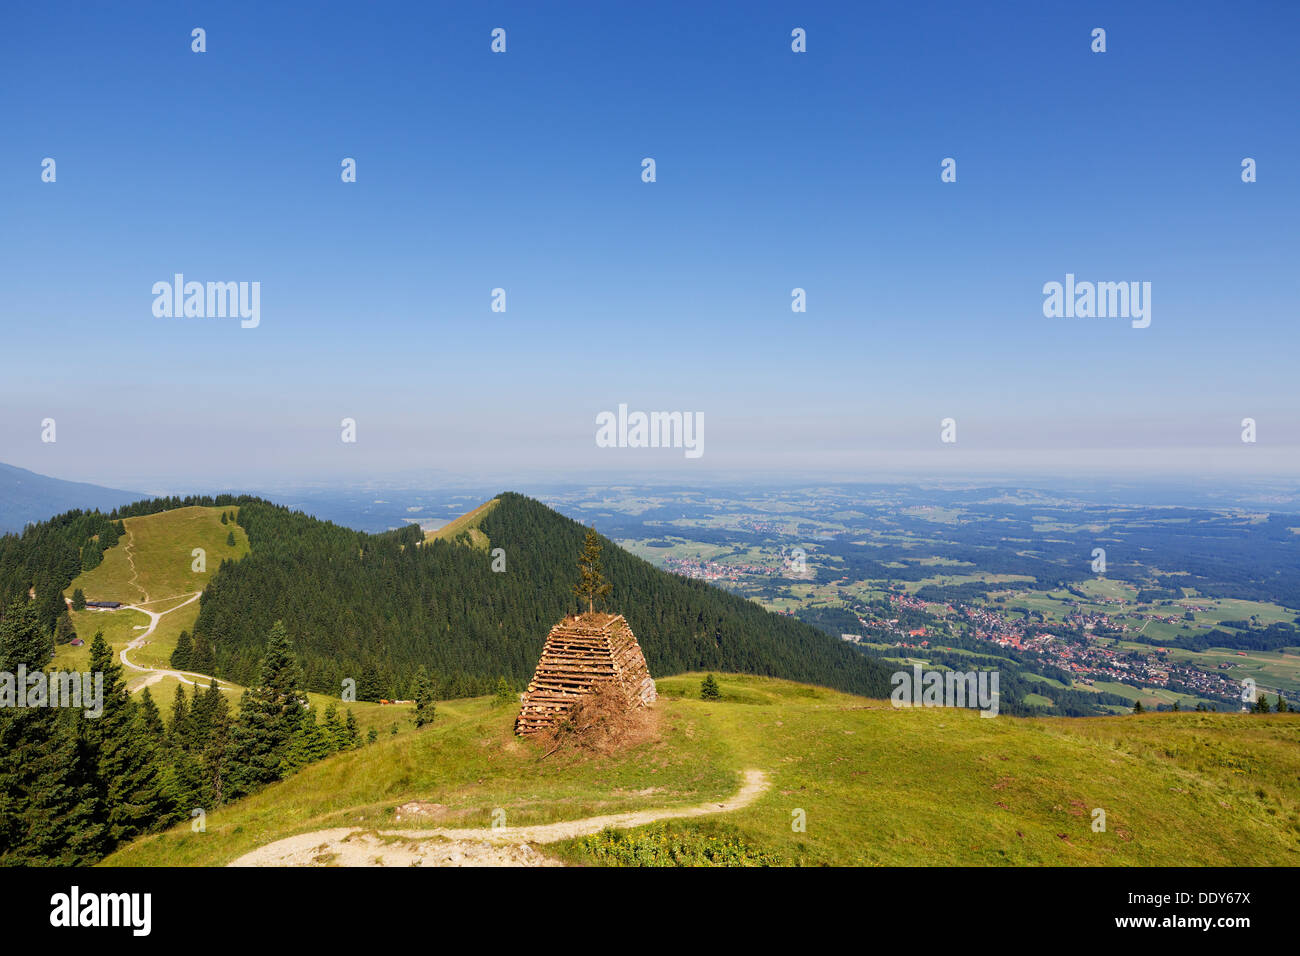 Blick vom Hinteren Hoernle Mountain über Mittleren Hoernle Berg und Vorderes Hoernle Berg, Bad Kohlgrub auf der rechten Seite Stockfoto